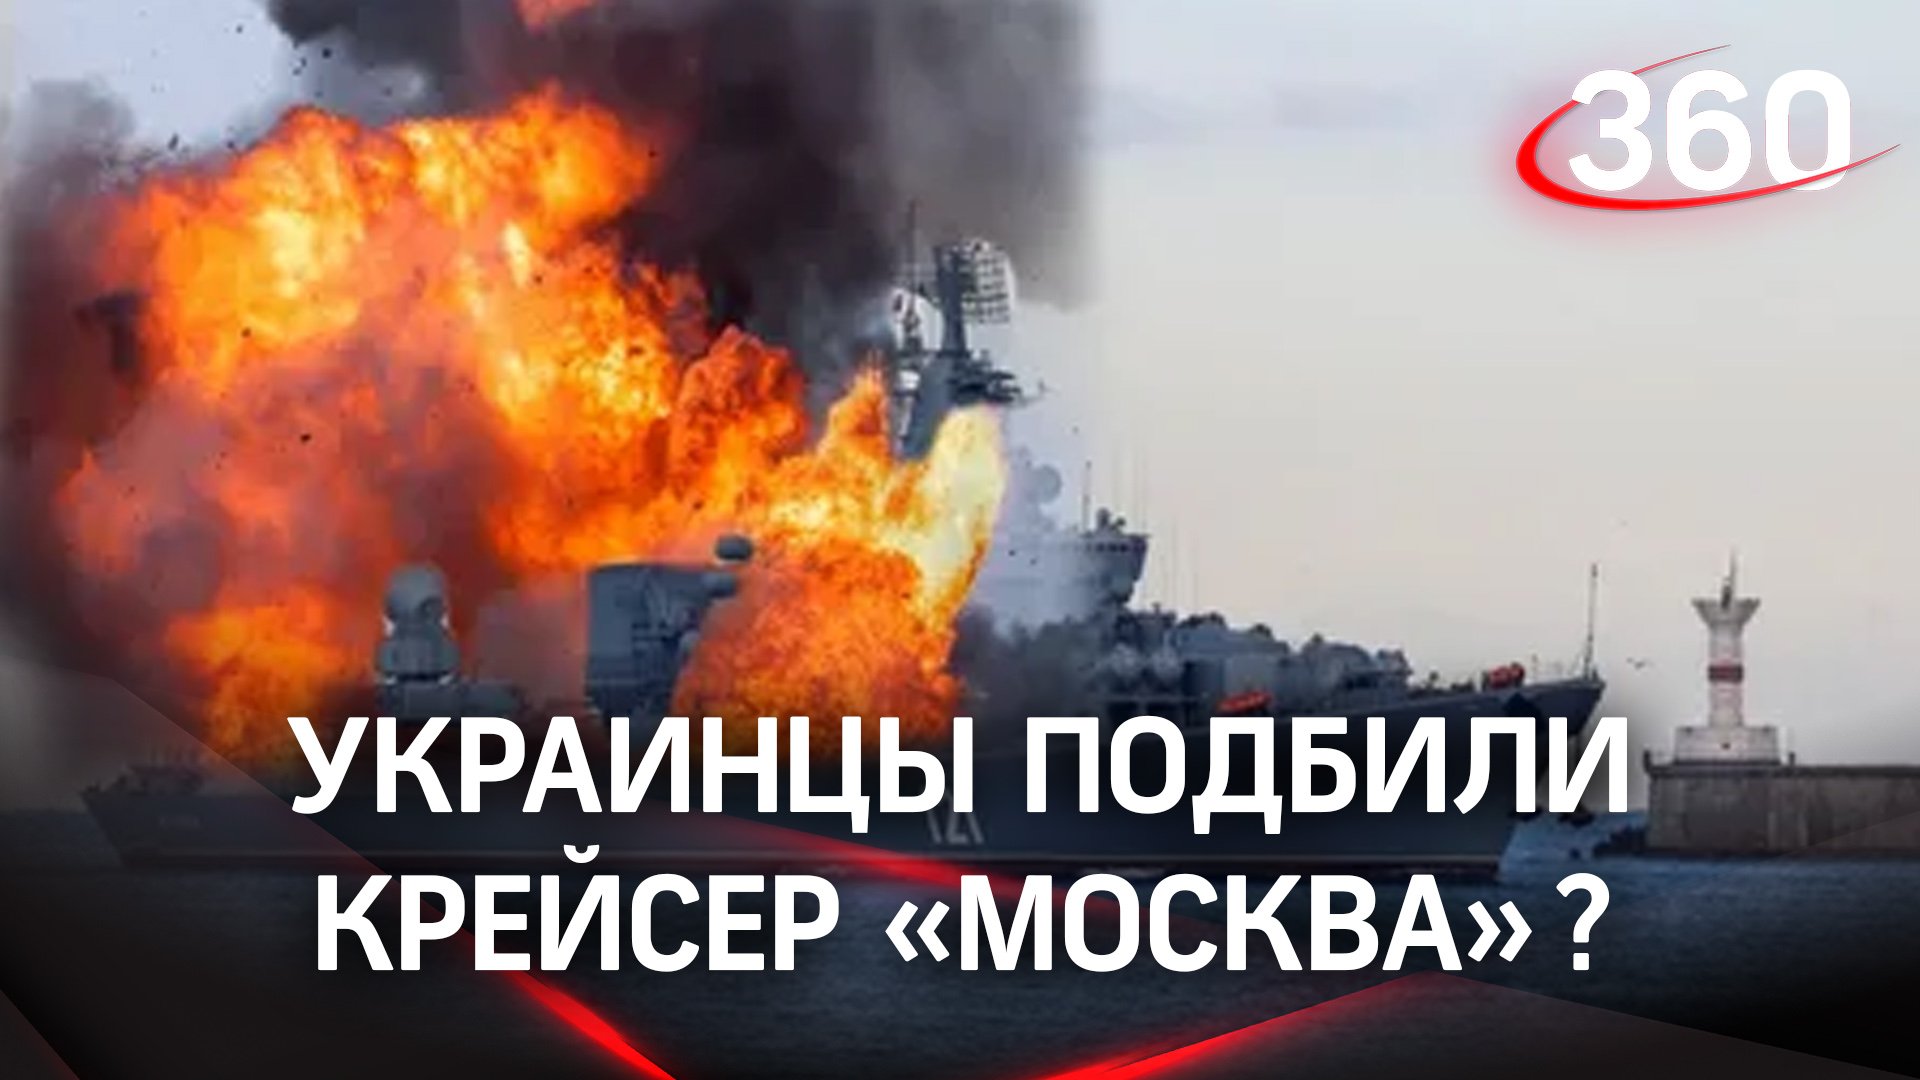 Пожар на ракетном крейсере «Москва» привел к детонации боезапаса. Экипаж эвакуирован с корабля